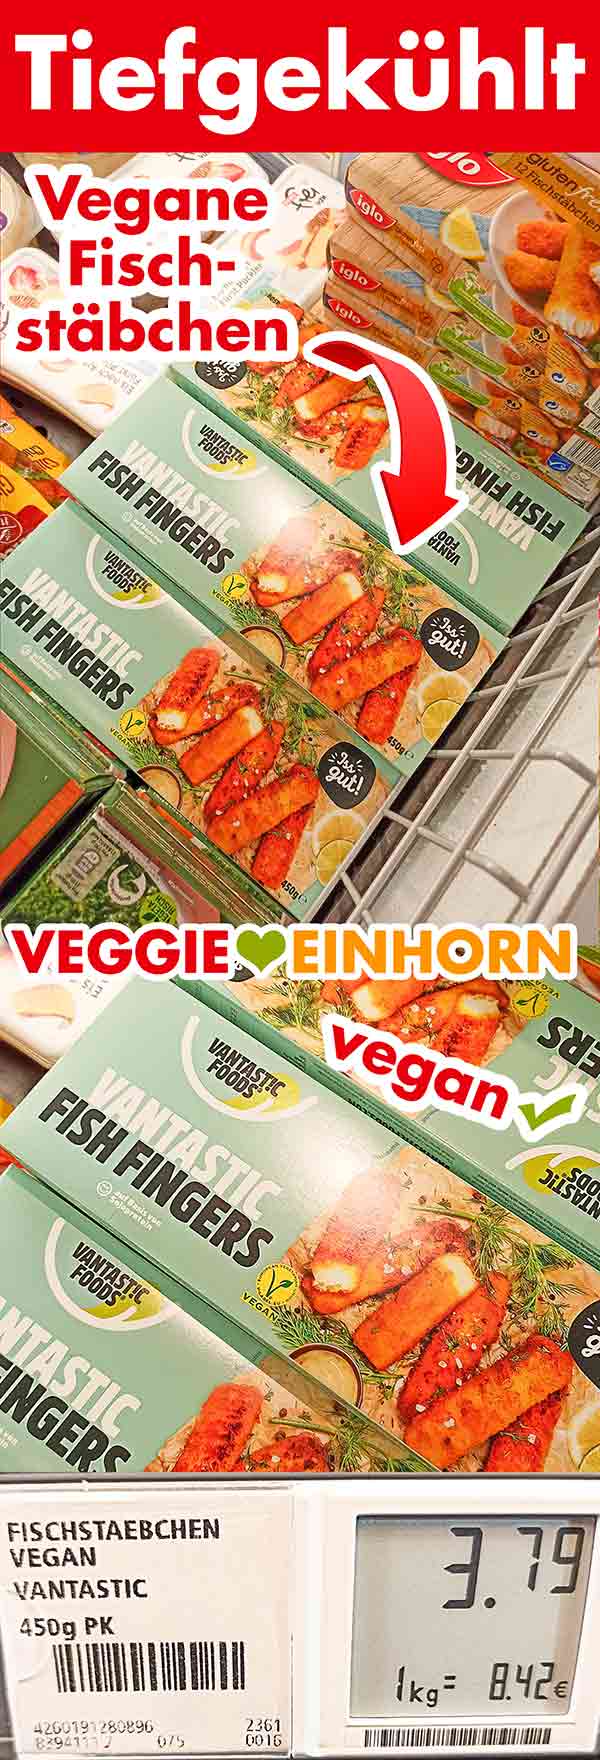 Vegane Fischstäbchen im Supermarkt